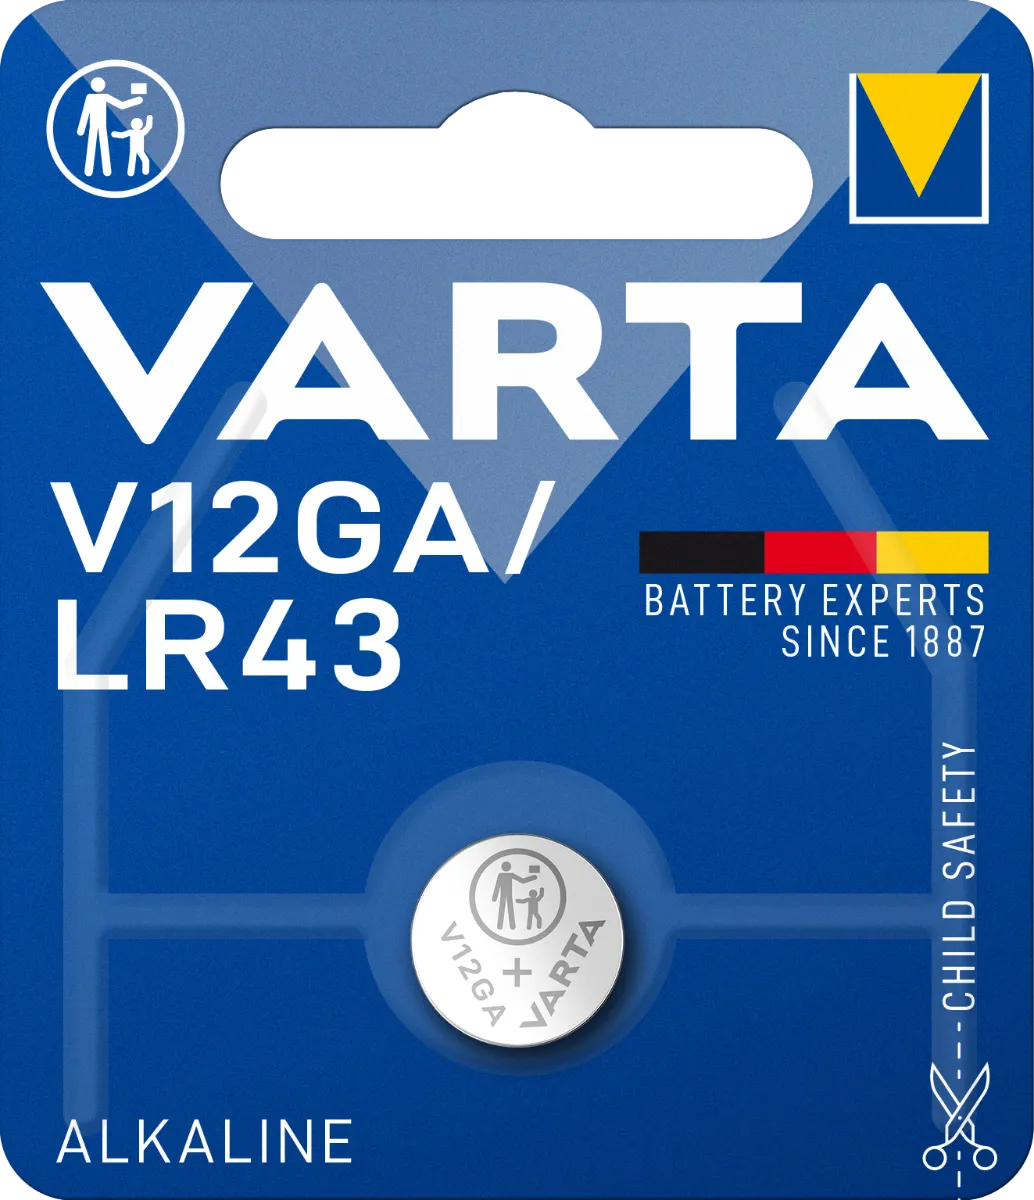 Varta V12GA/LR43